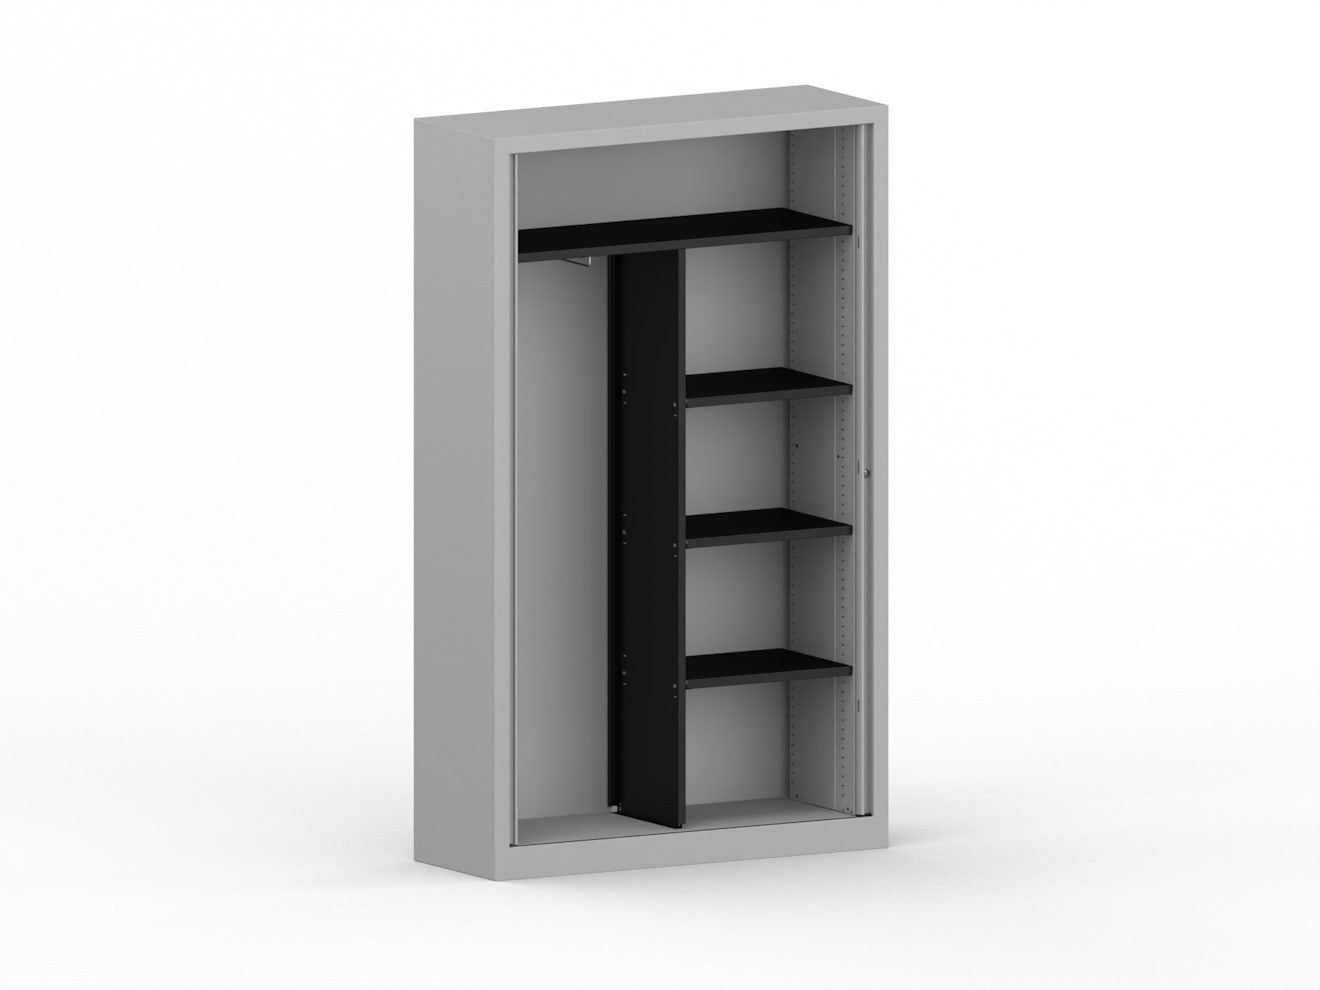 Wardorbe kit + 3 shelves